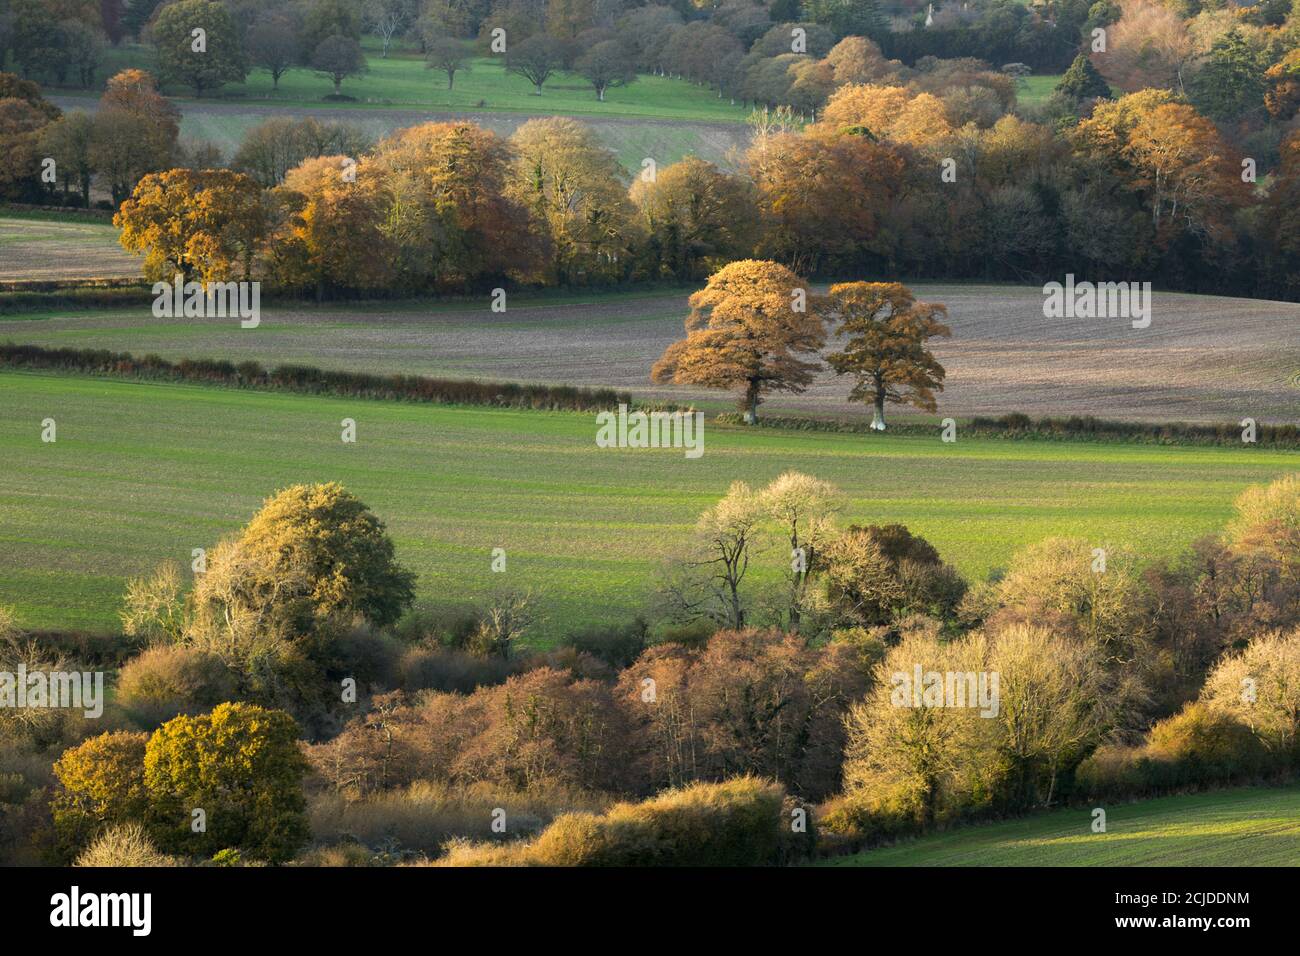 La dernière des couleurs d'automne s'accrochant dans la vallée de la Cerne, en haut Cerne, Dorset, Angleterre, Royaume-Uni Banque D'Images